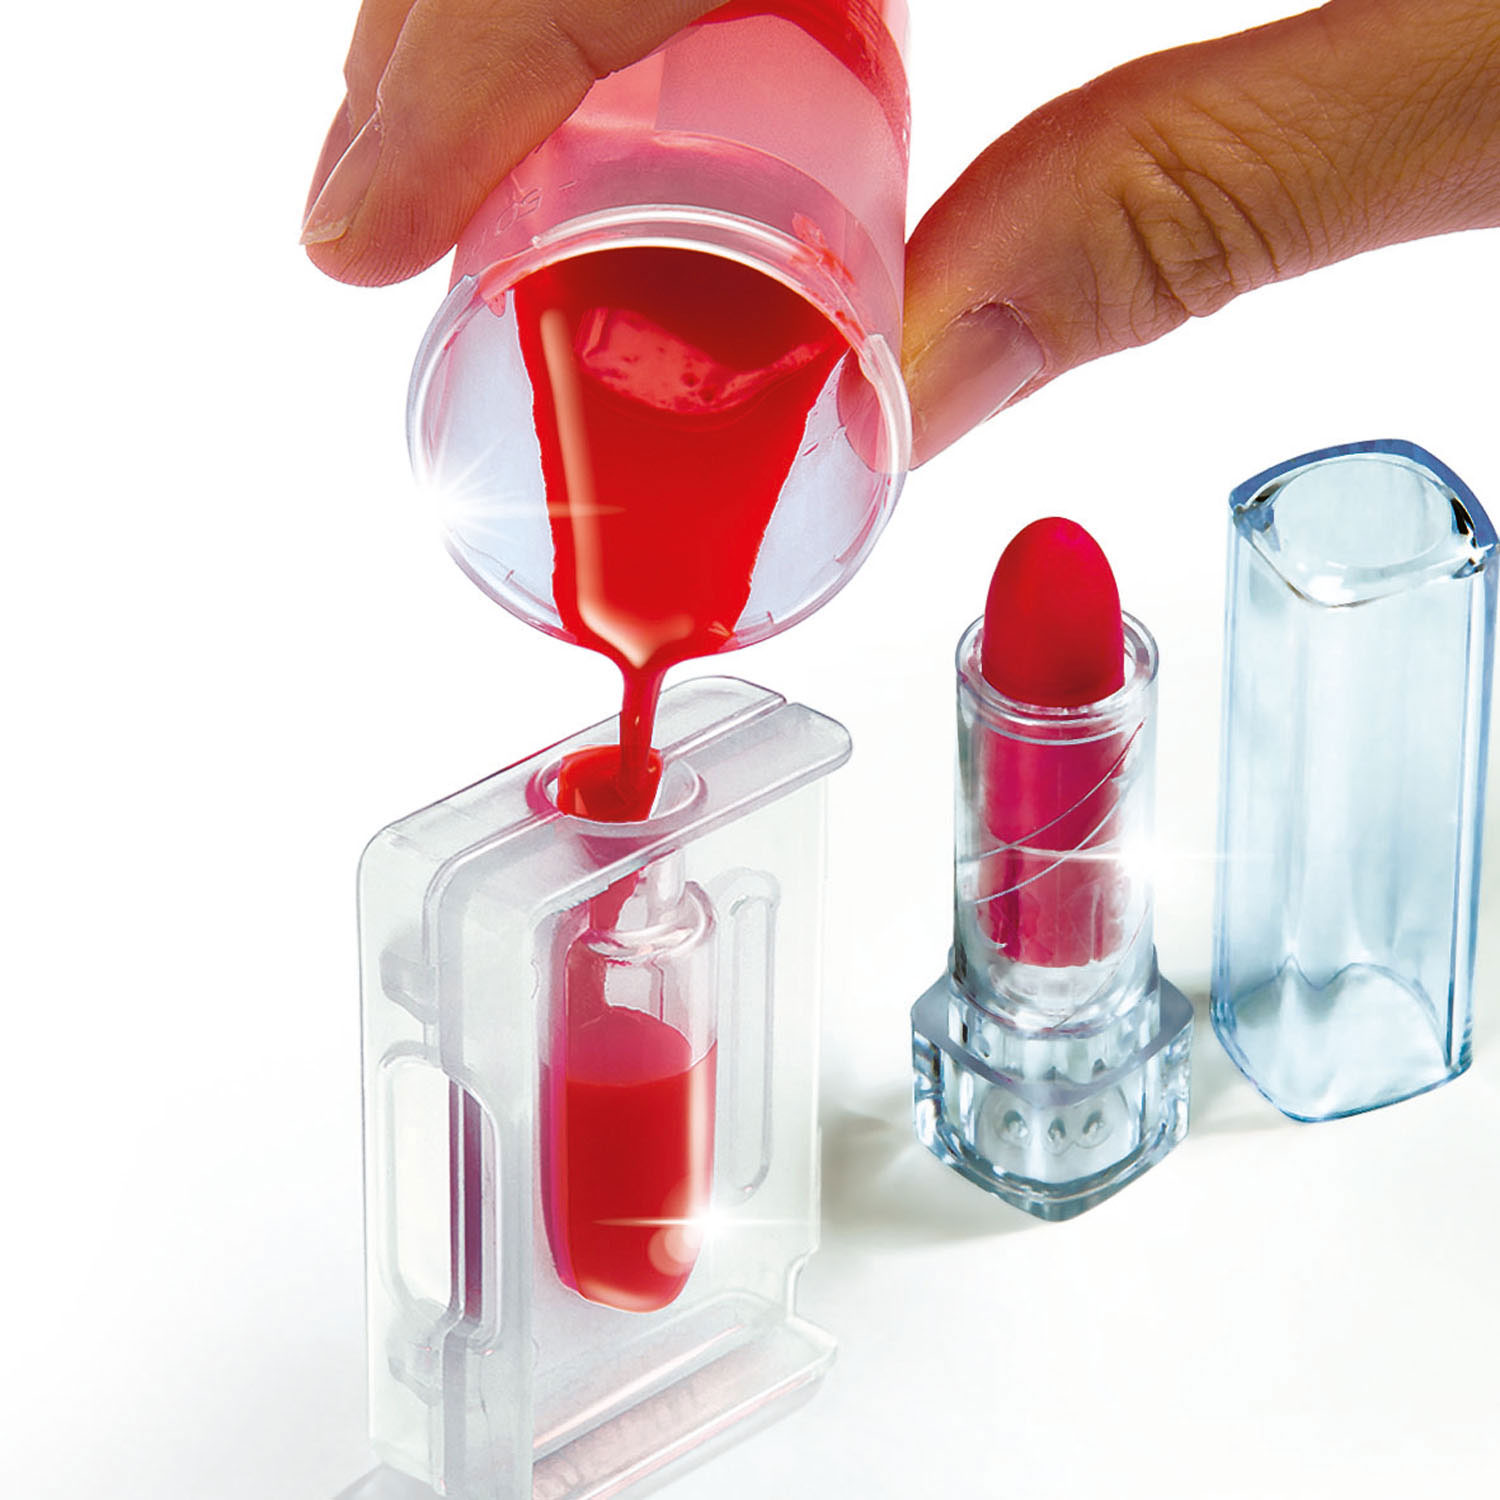 Clementoni Science & Games - Fabriquez votre propre rouge à lèvres